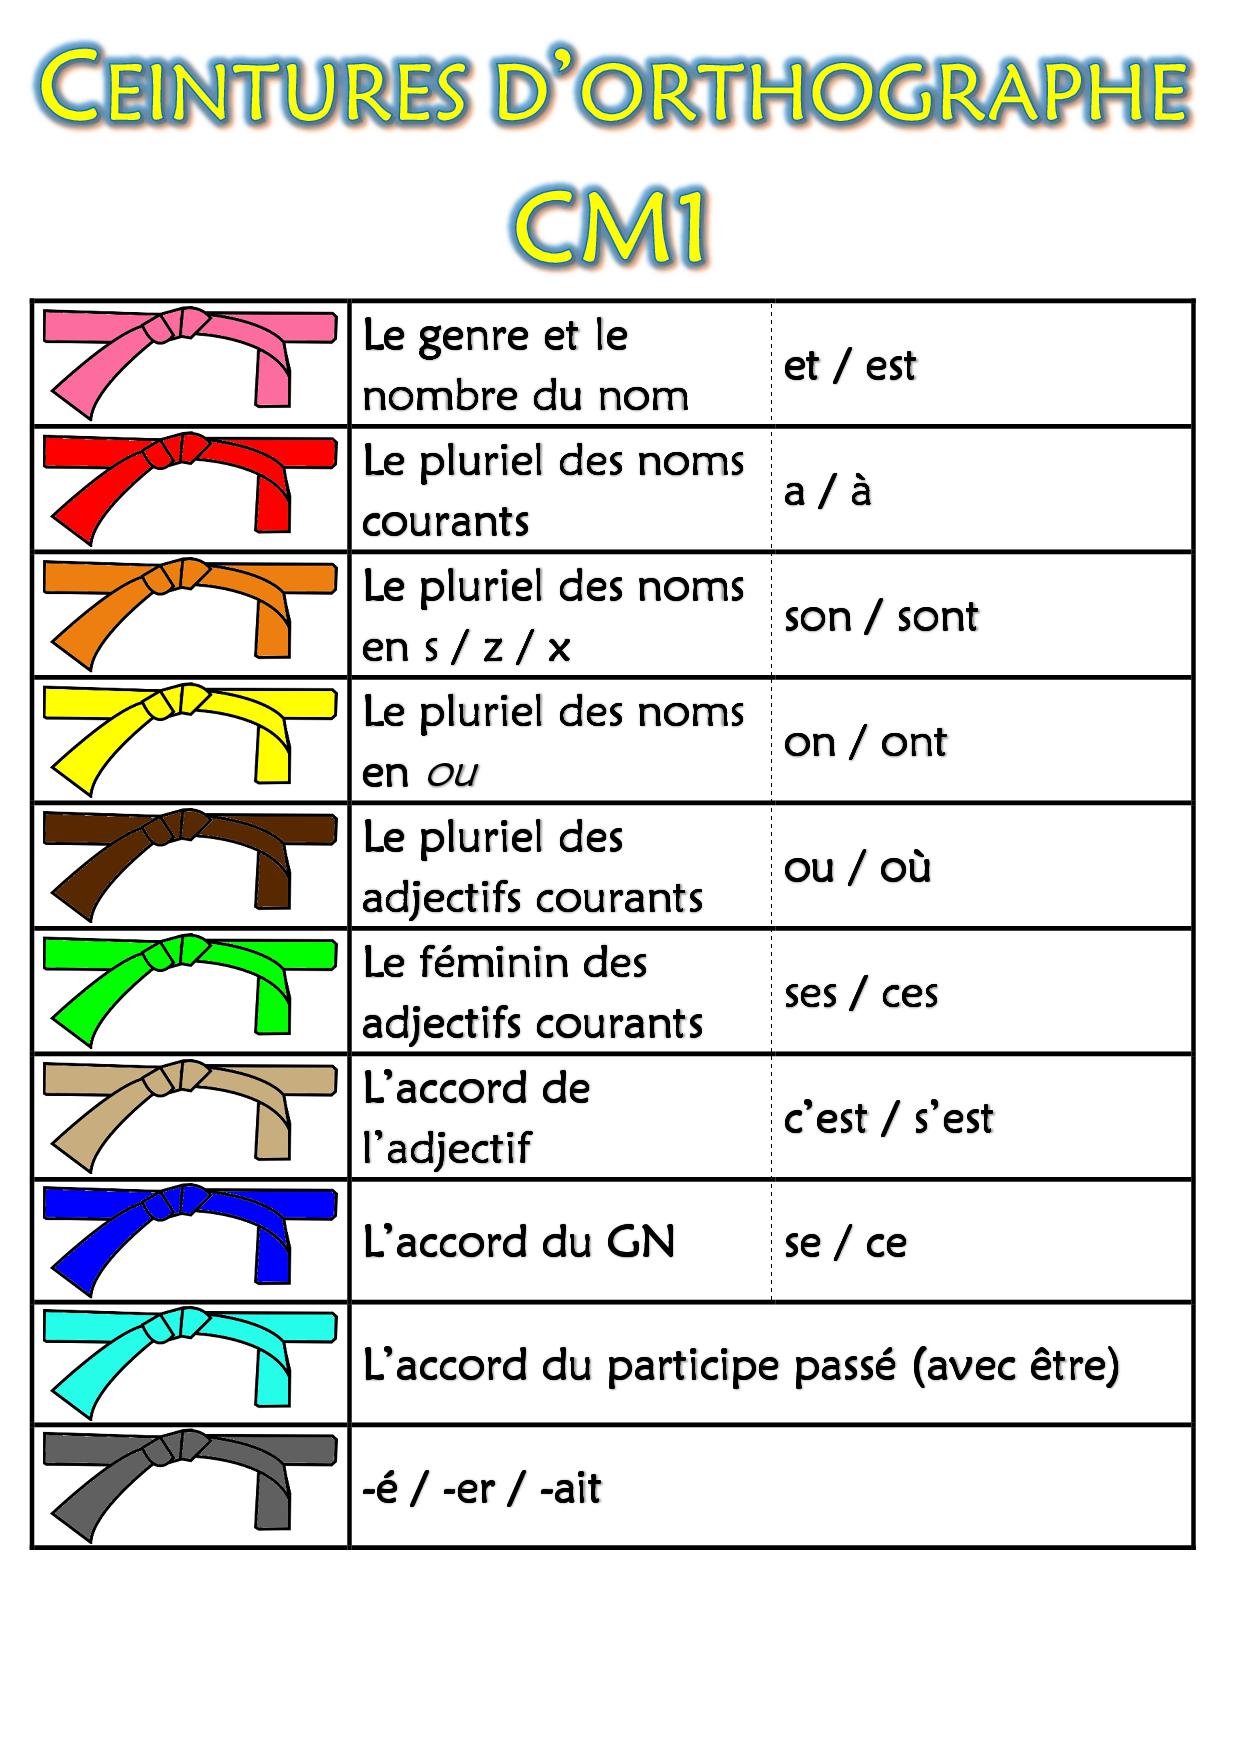 Ceintures d'orthographe CM1 - Chez monsieur Paul